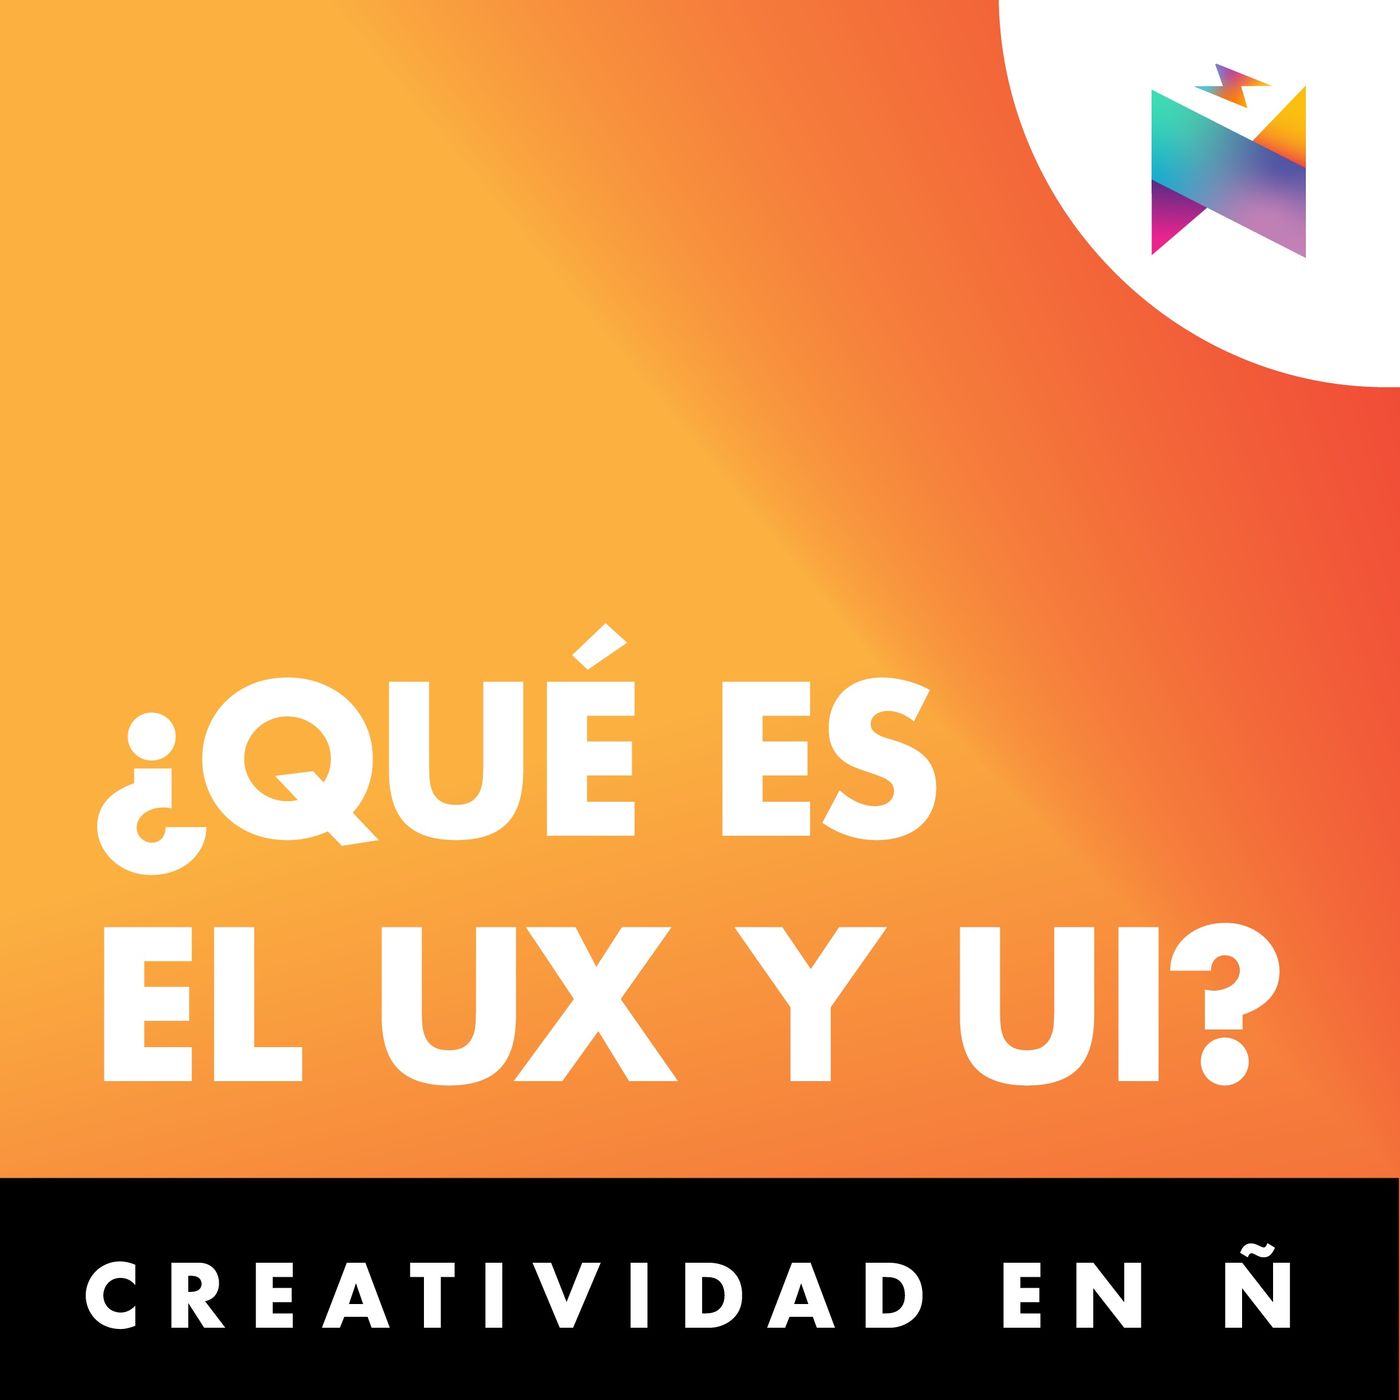 E46 • ¿Qué es el UX y UI? • Creatividad en Ñ